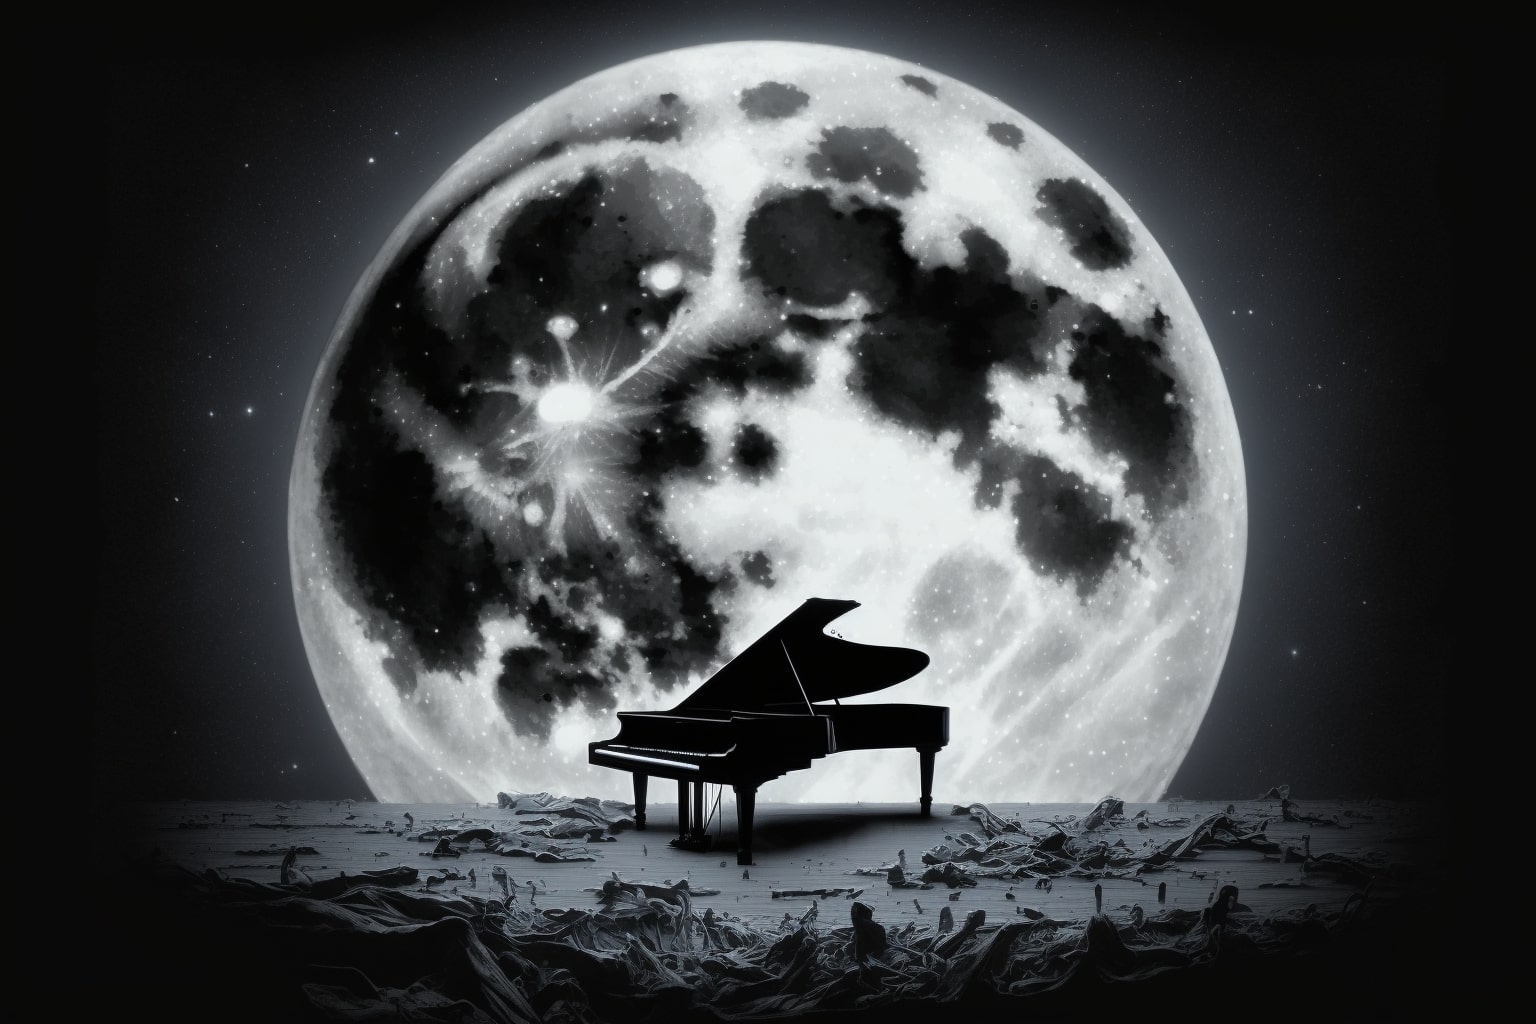 Clair de lune - Claude Debussy